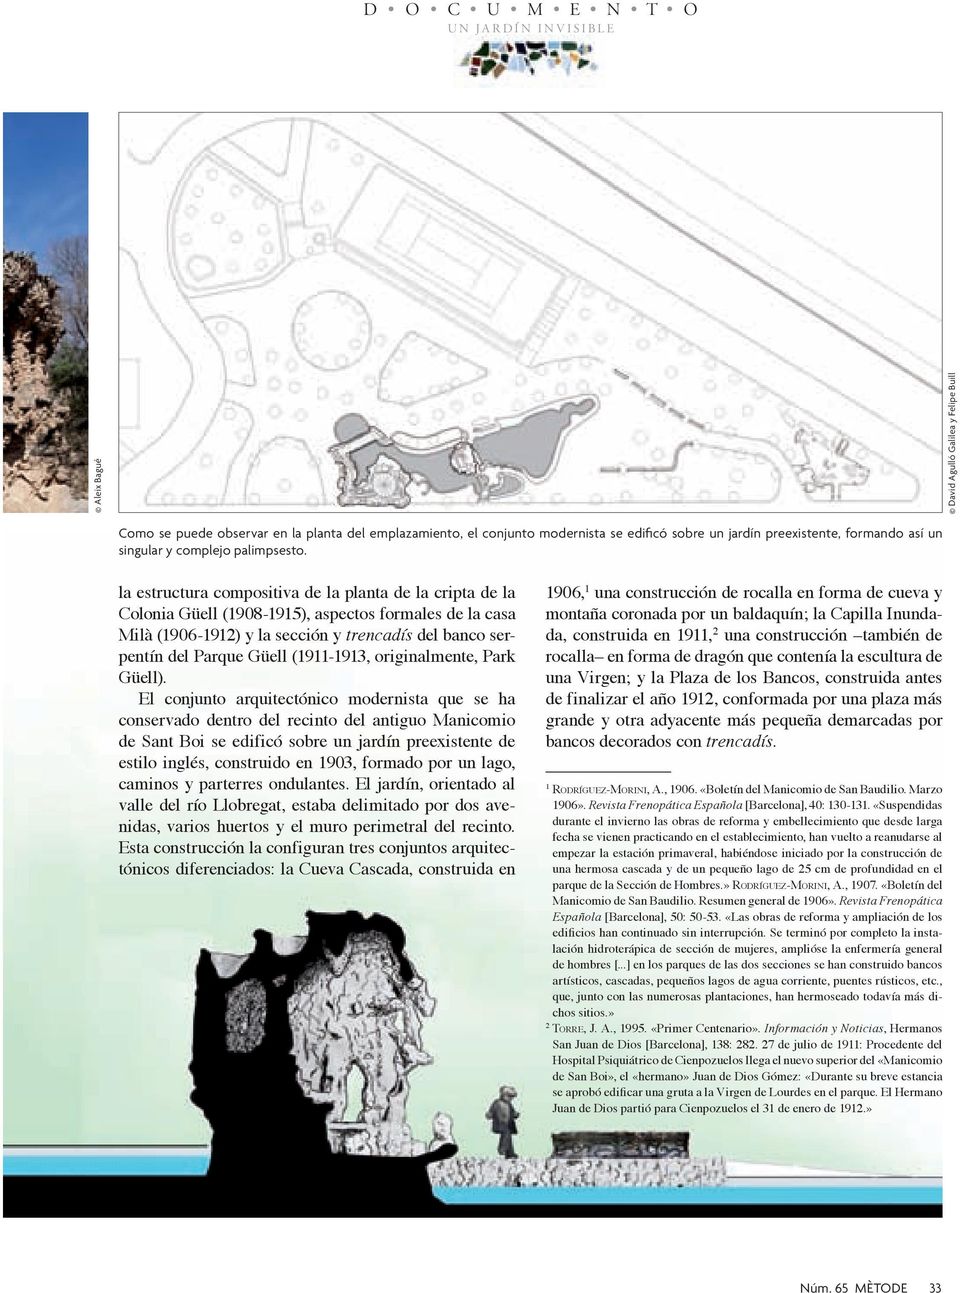 la estructura compositiva de la planta de la cripta de la Colonia Güell (1908-1915), aspectos formales de la casa Milà (1906-1912) y la sección y trencadís del banco serpentín del Parque Güell